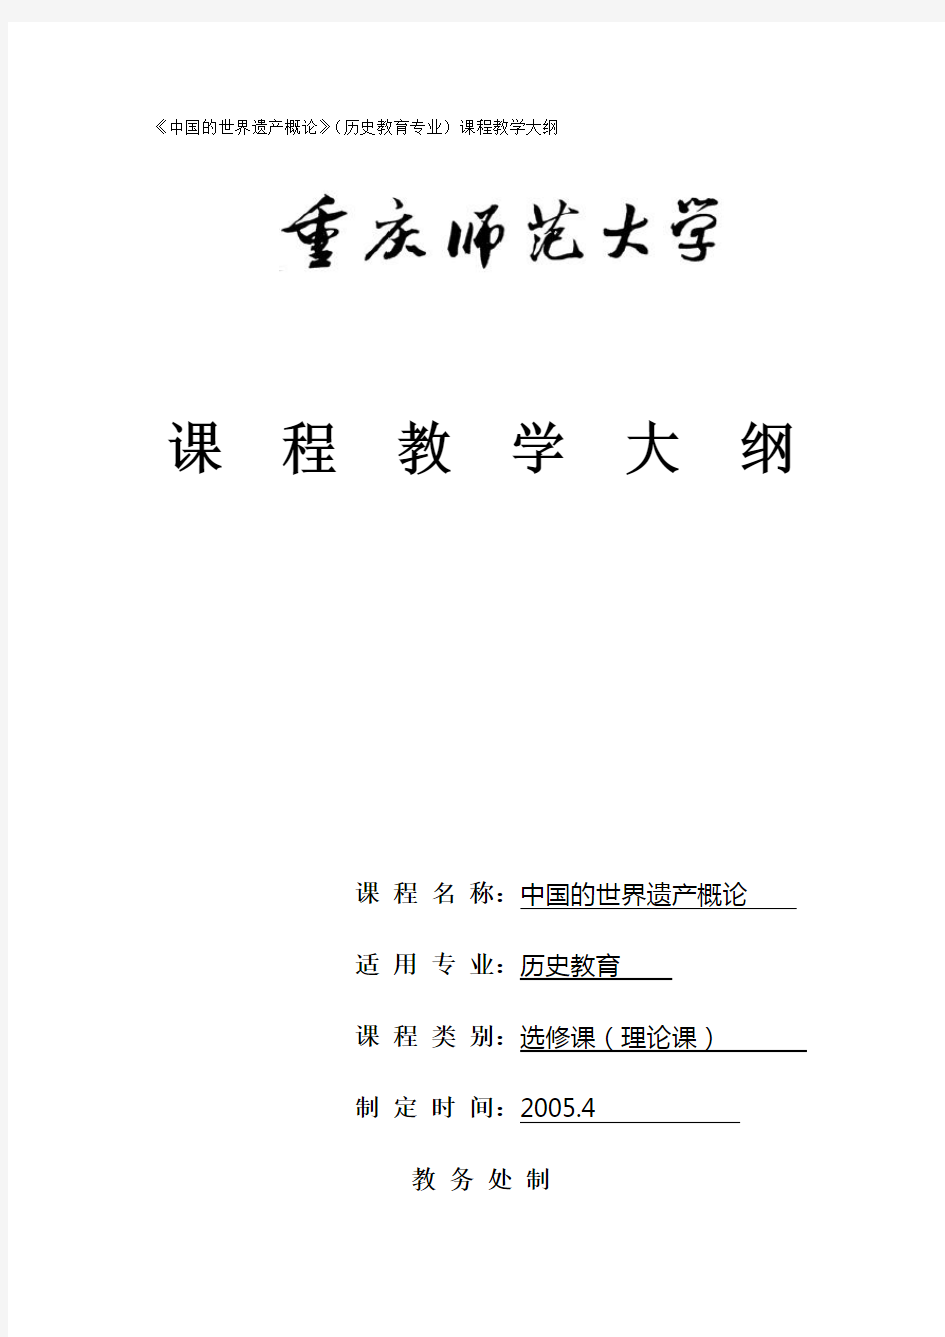 中国的世界遗产概论(历史教育专业)课程教学大纲